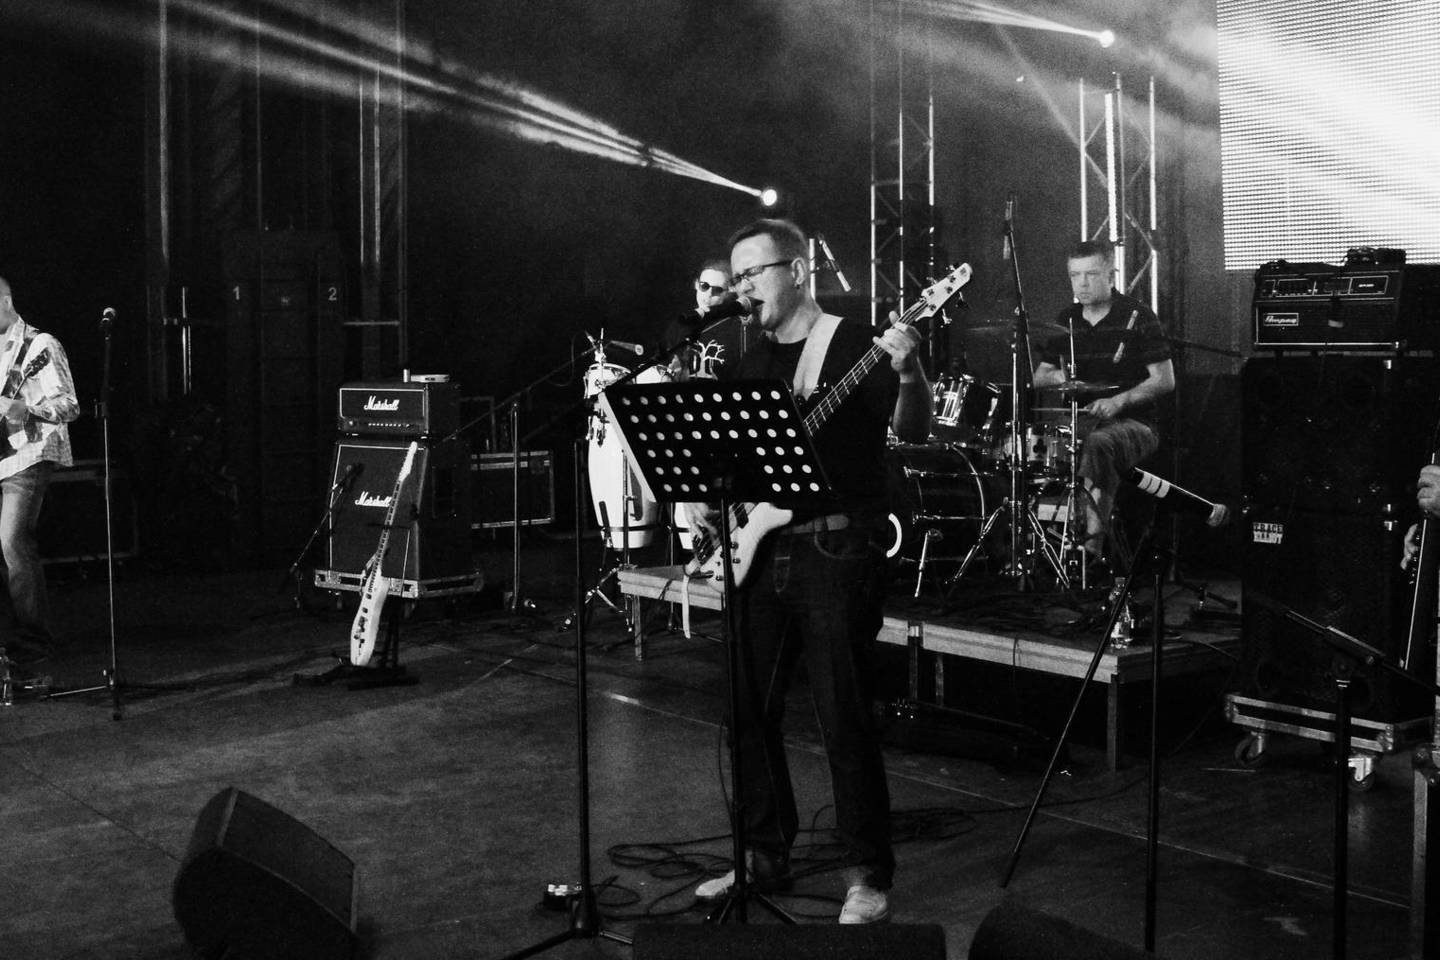 Klaipėdos bliuzroko grupė „Kontrabanda“, suburta bosine gitara grojančio bei tekstus kuriančio ir dainuojančio žinomo poeto Gintaro Grajausko, yra savotiškas uostamiesčio fenomenas.